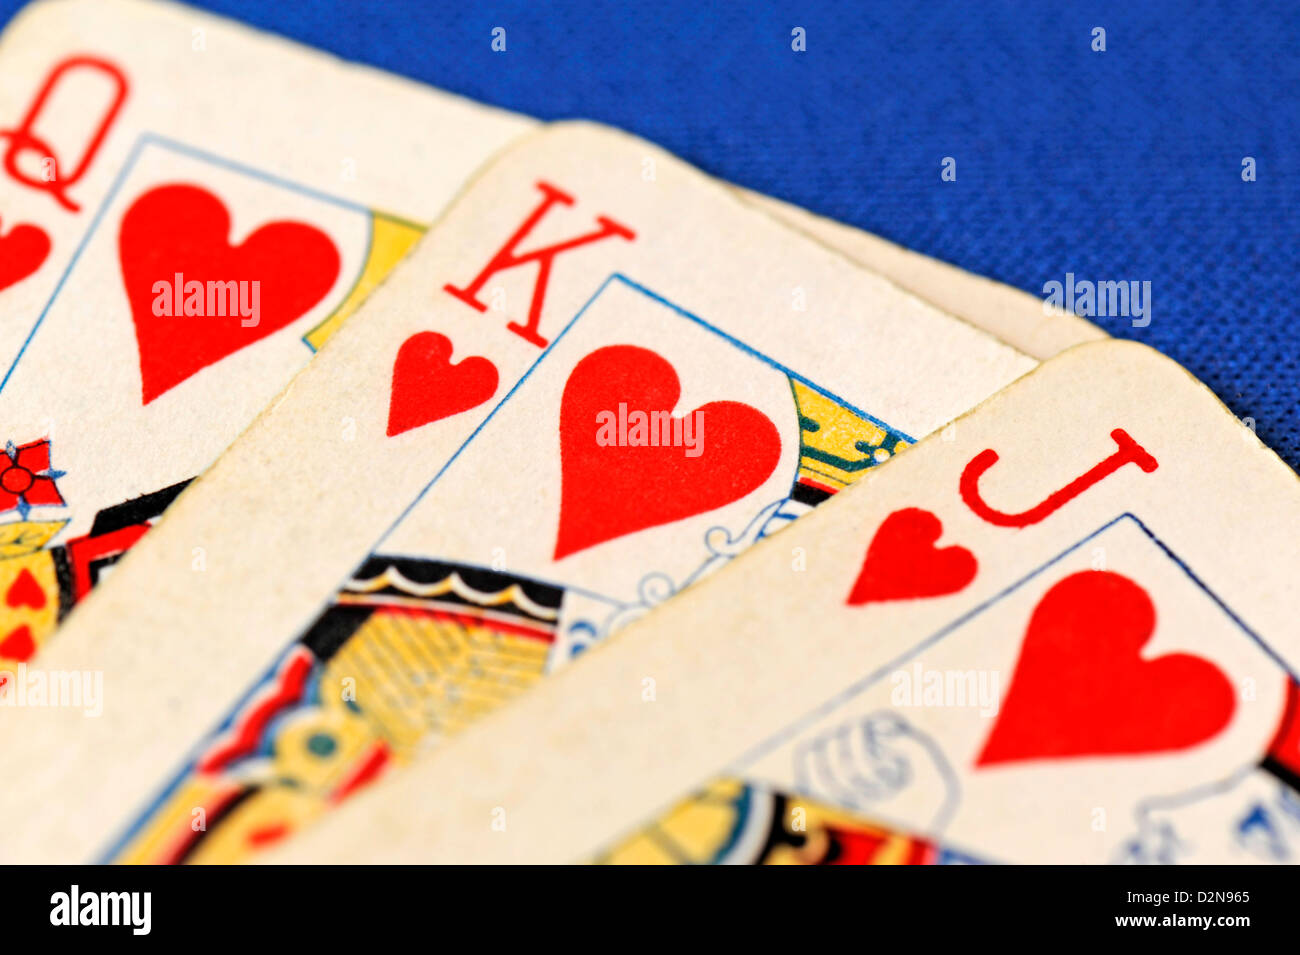 Nahaufnahme von drei Spielkarten - Bube, Dame und Jack of Hearts auf blauem Hintergrund Stockfoto